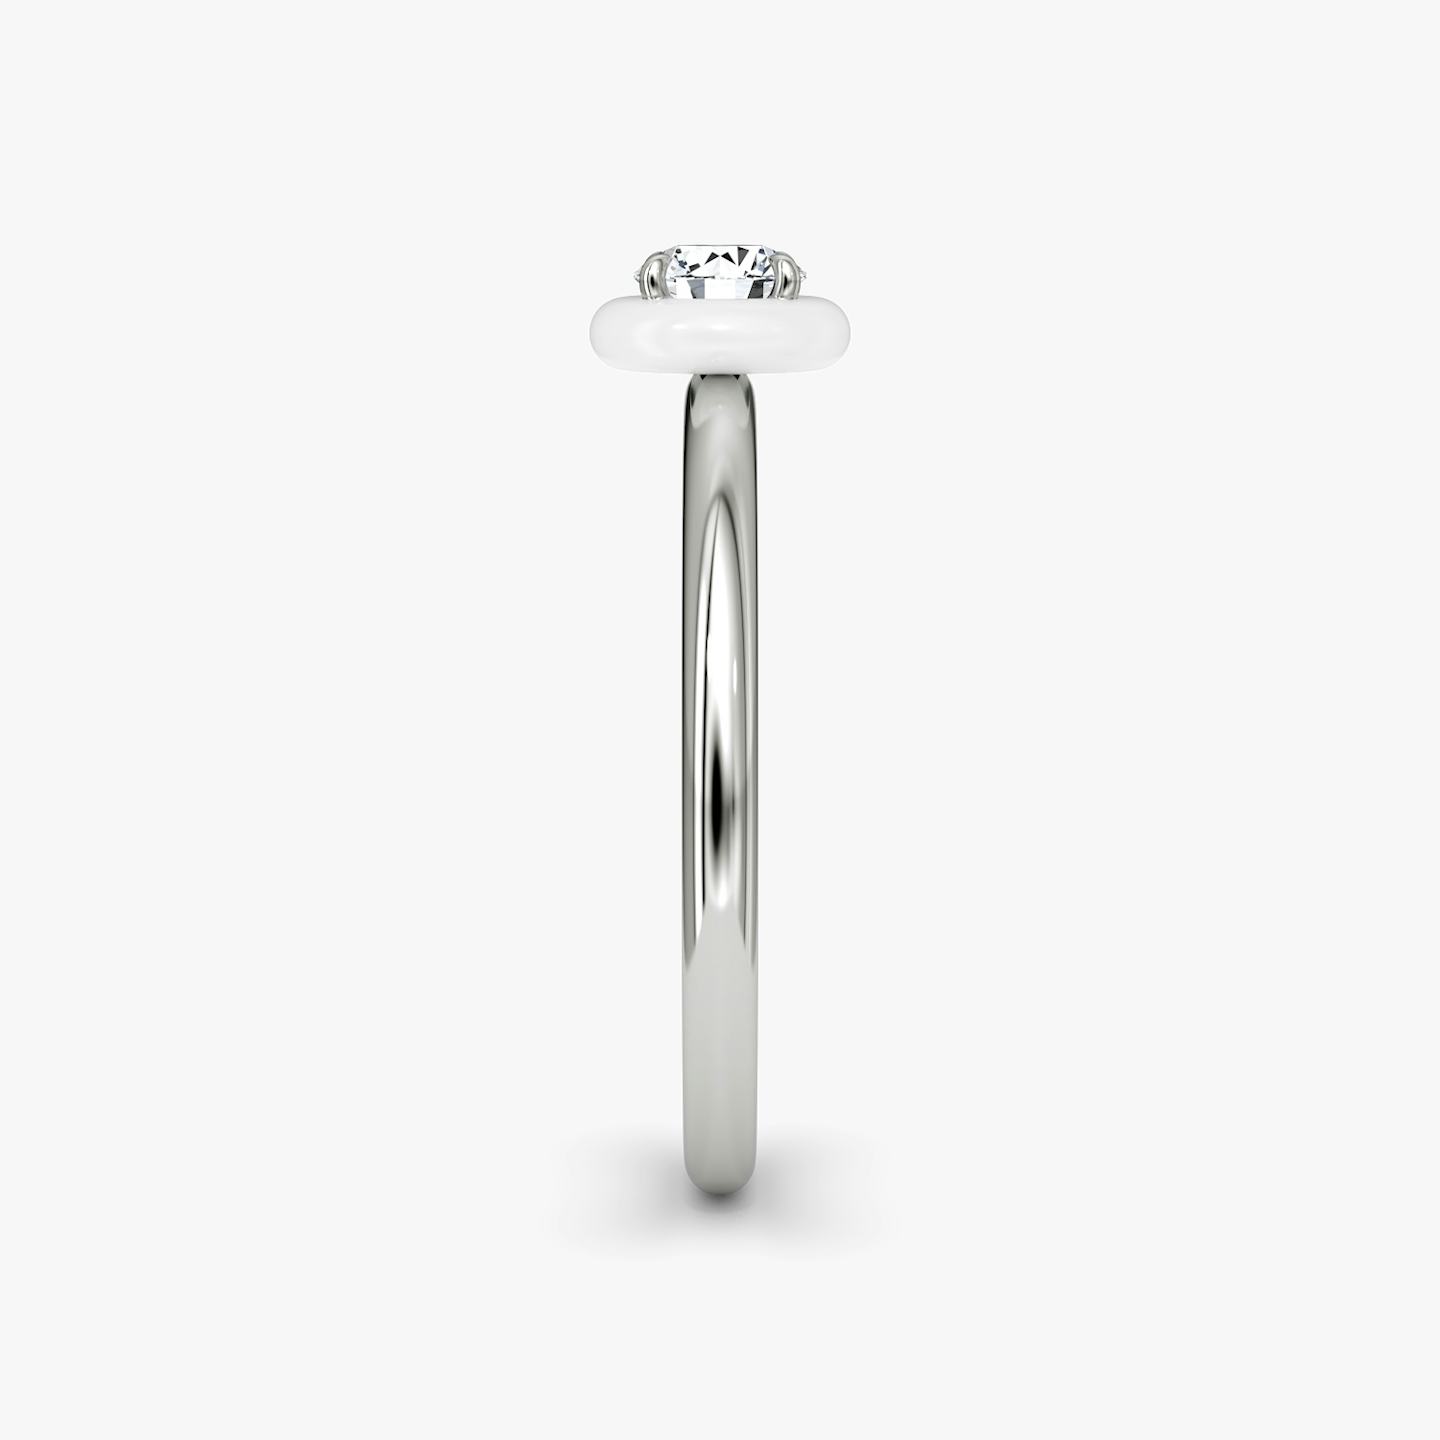 Aura Solitär Ring | Rund | Sterling Silber | Keramikfarbe:  Weiß